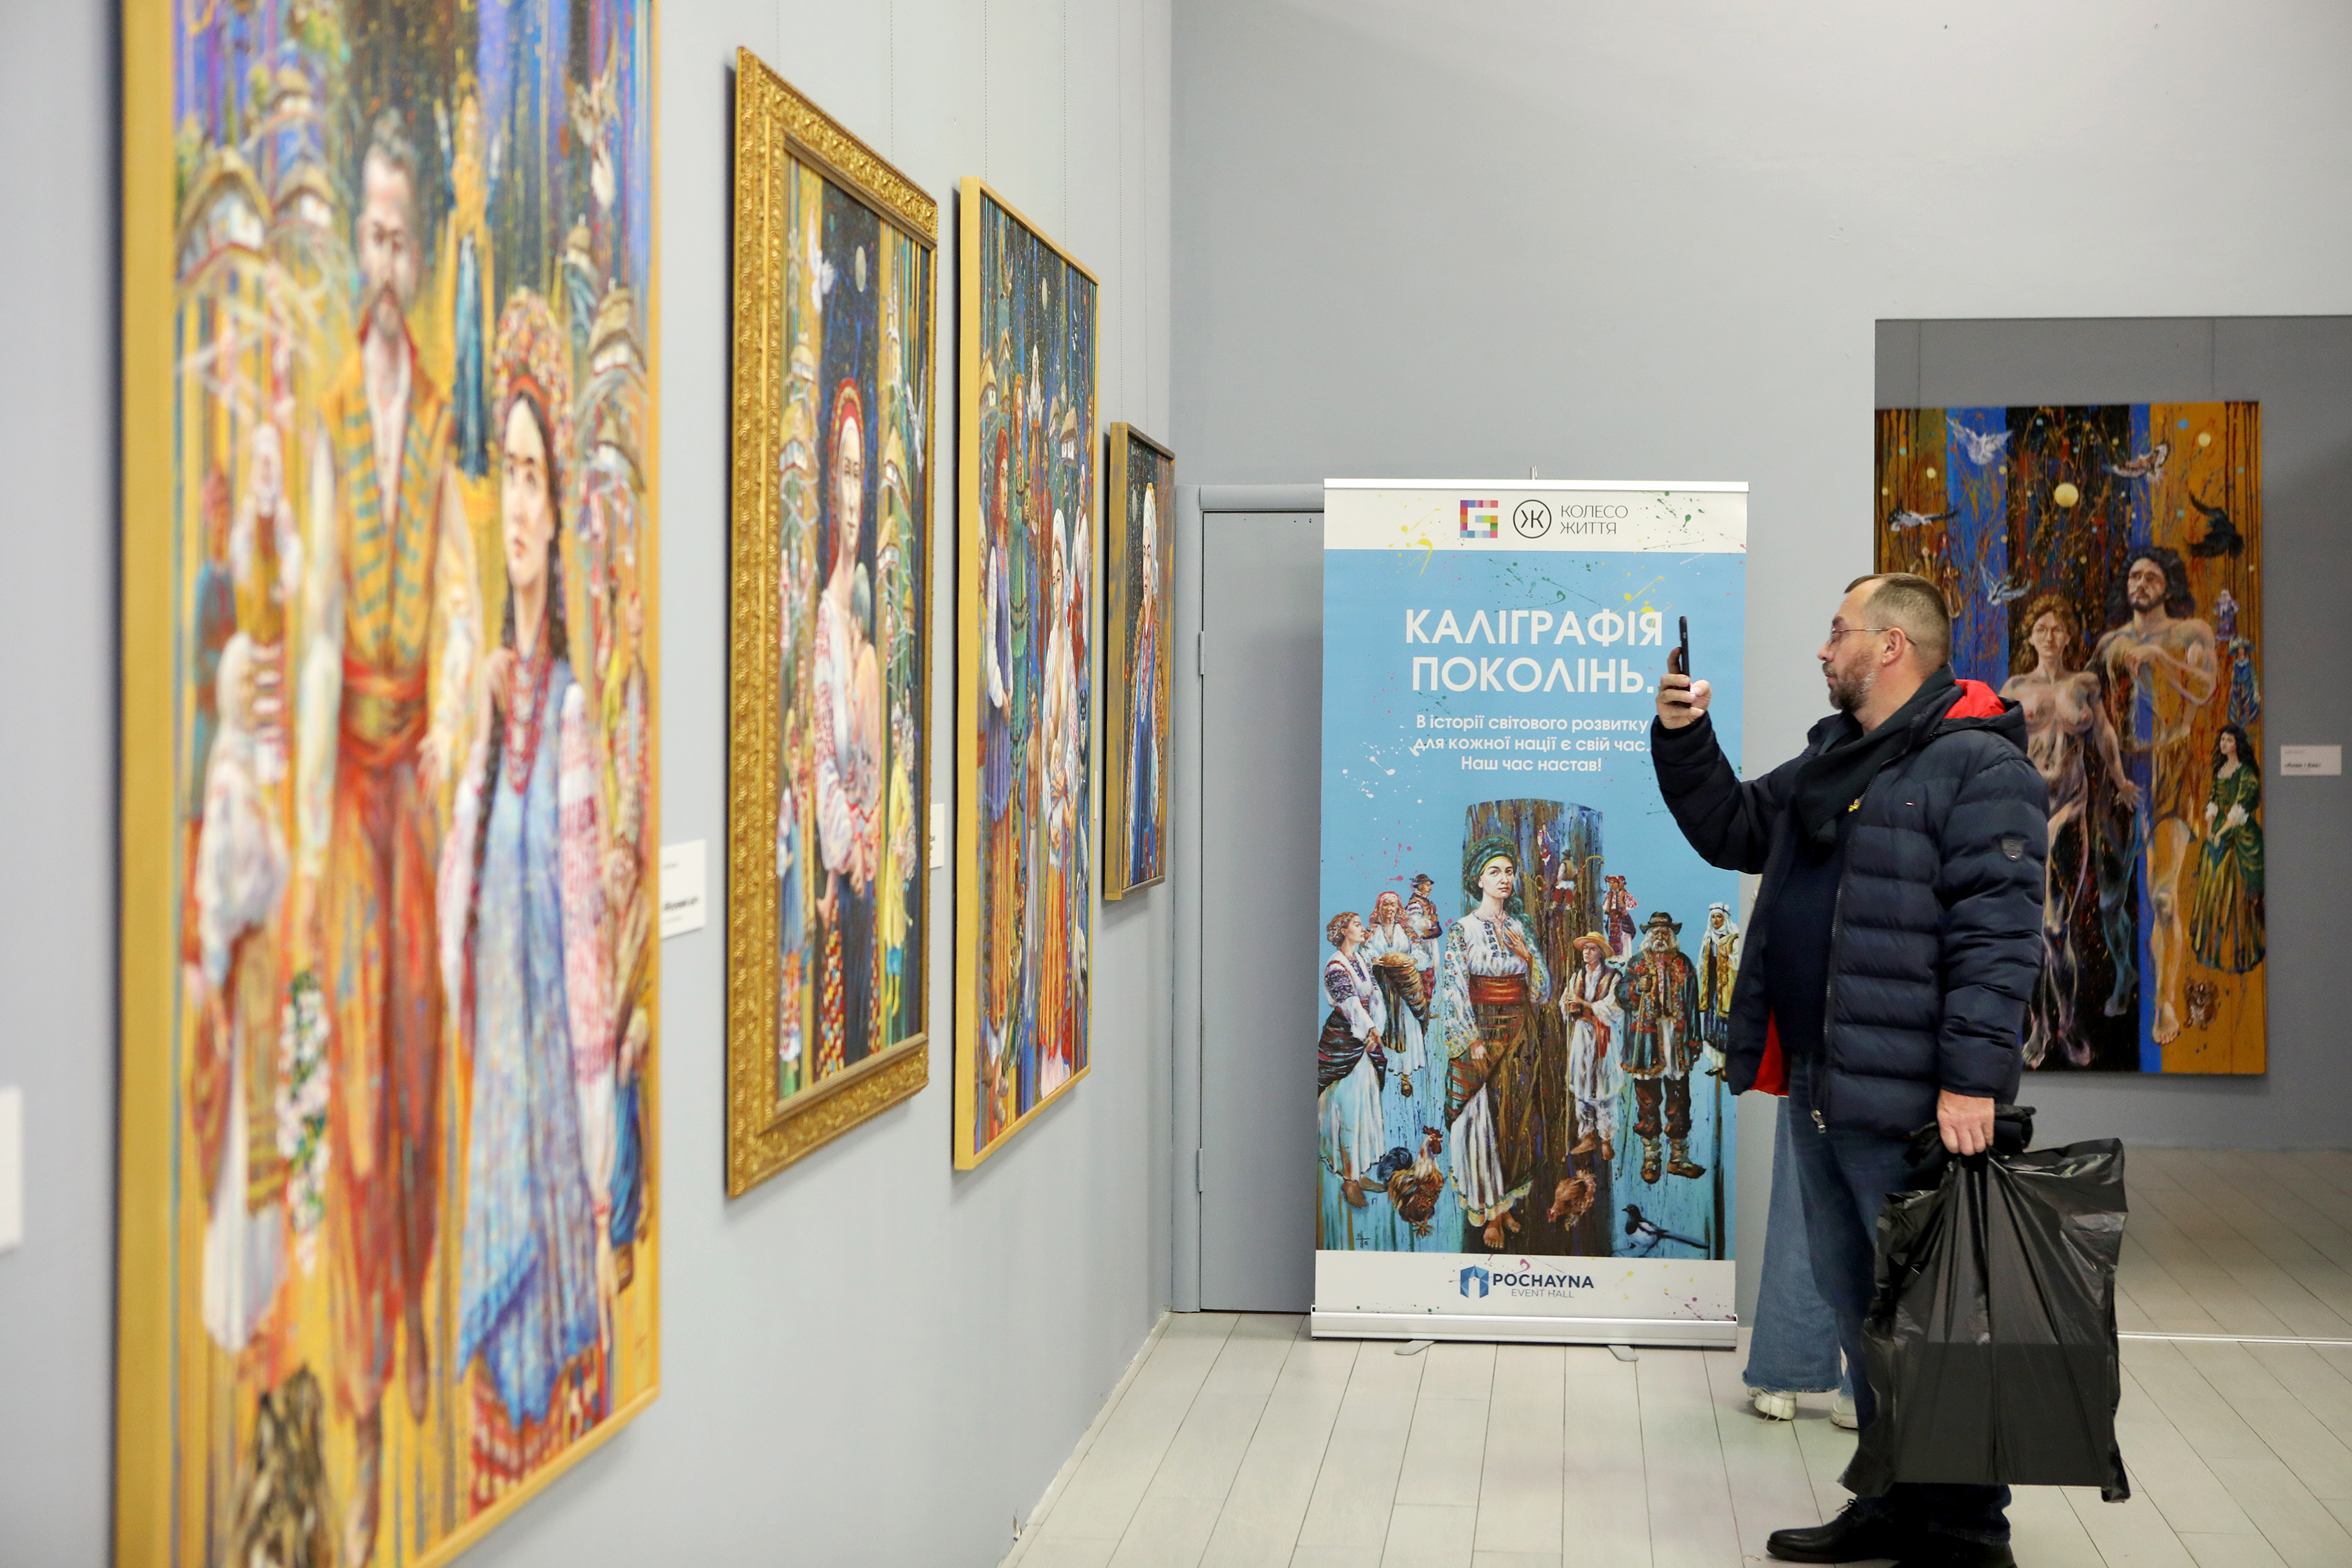 ”Пробуждение в мудрости”: в Киеве открылась выставка картин заслуженного художника Украины Юрия Нагулко — фото 6